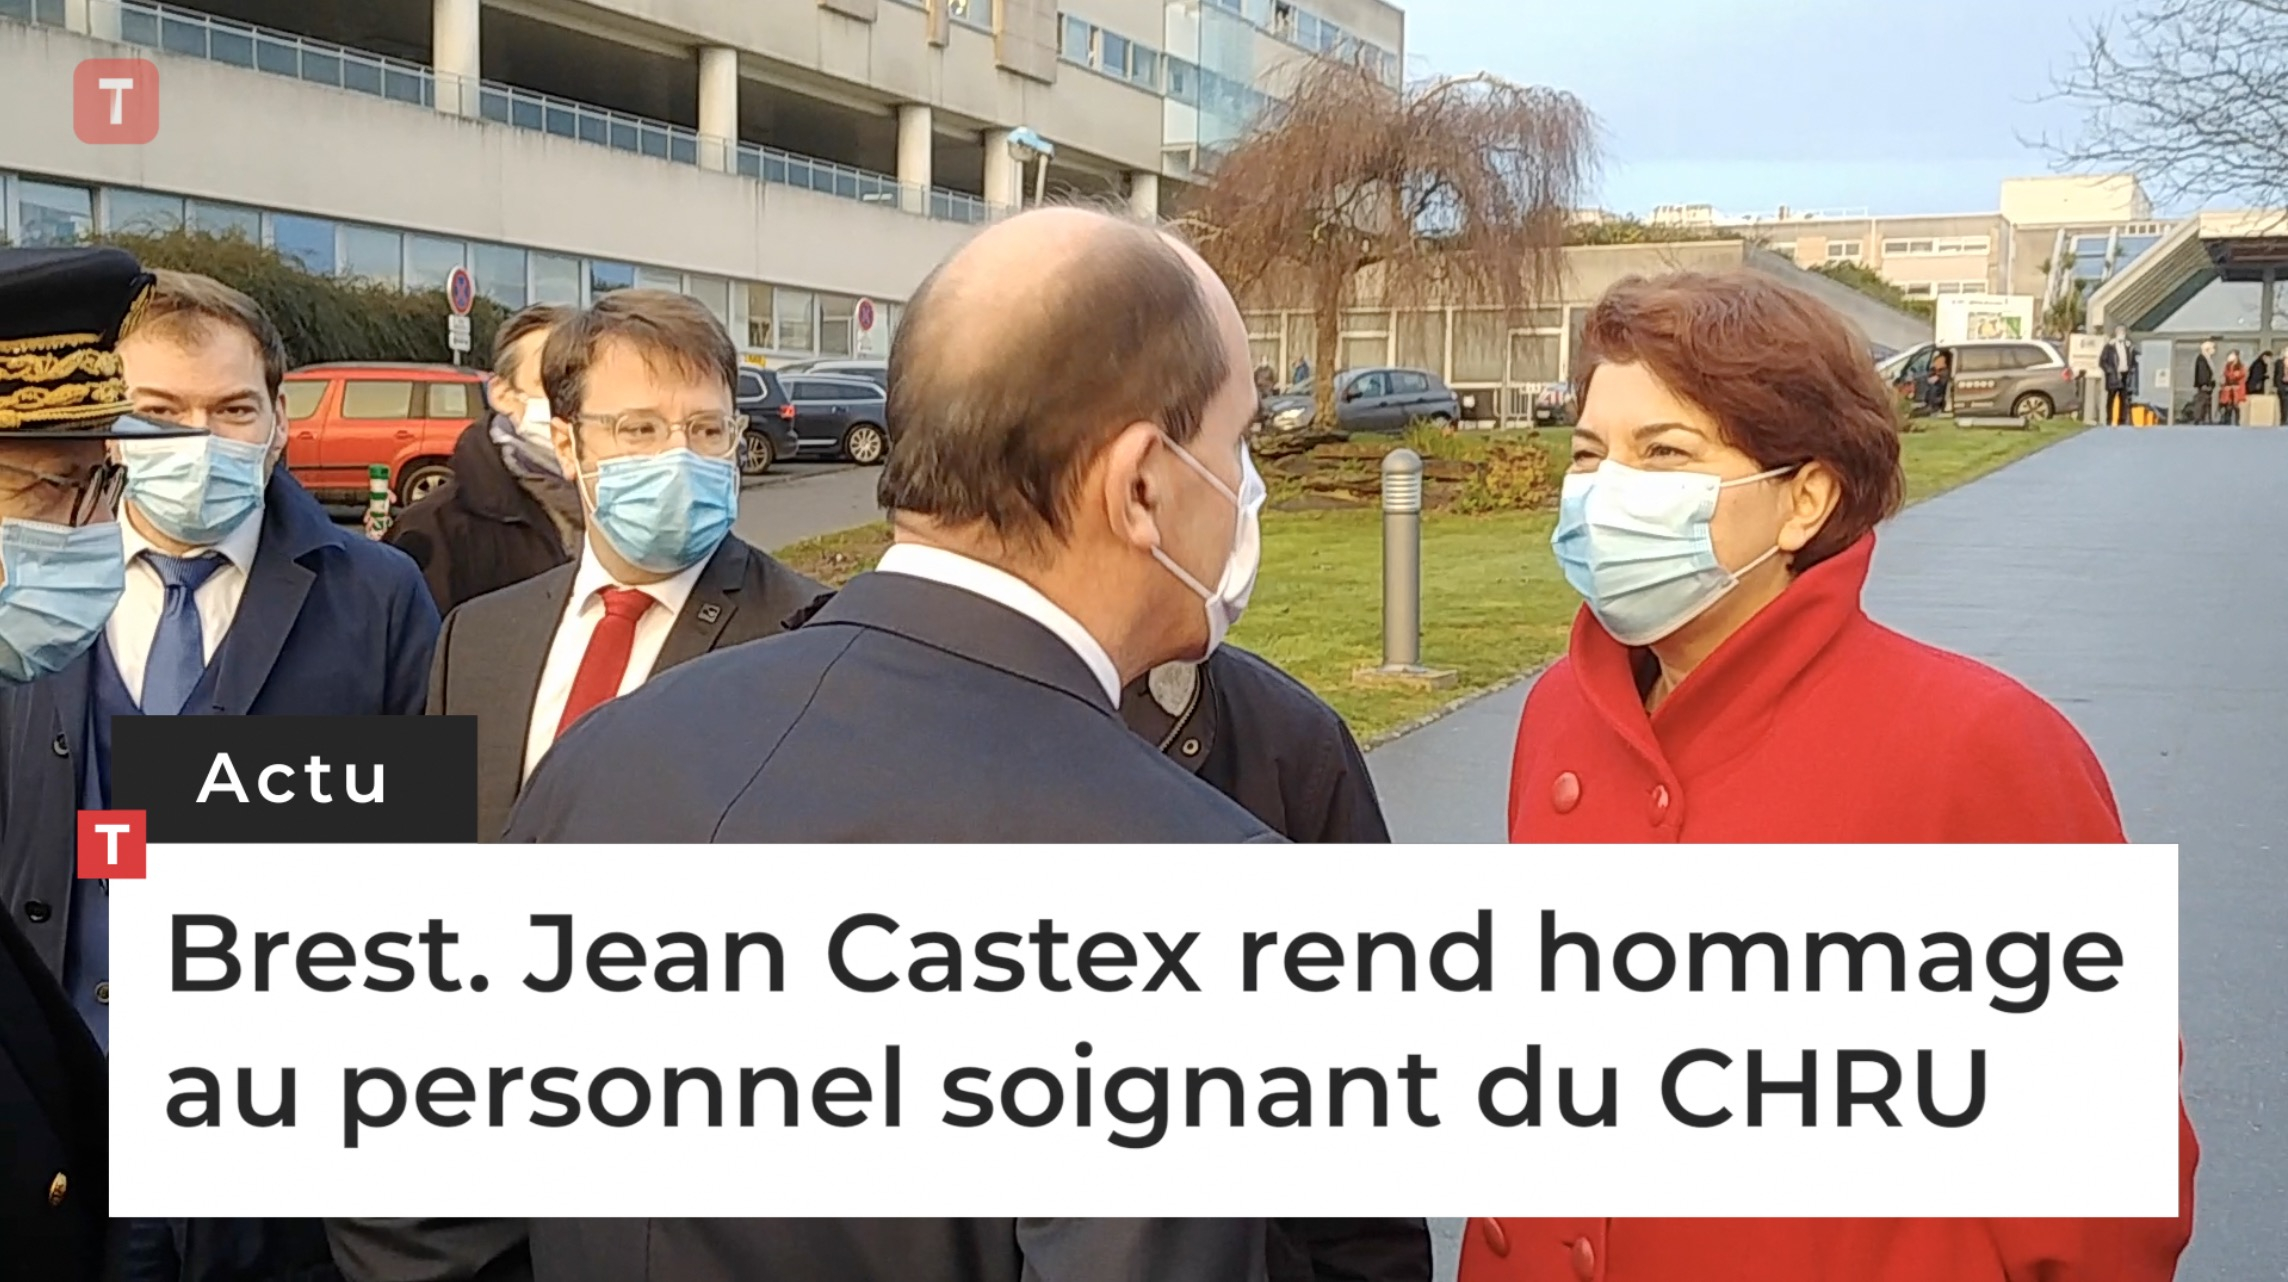 Brest. Jean Castex rend hommage au personnel soignant du CHRU (Le Télégramme)